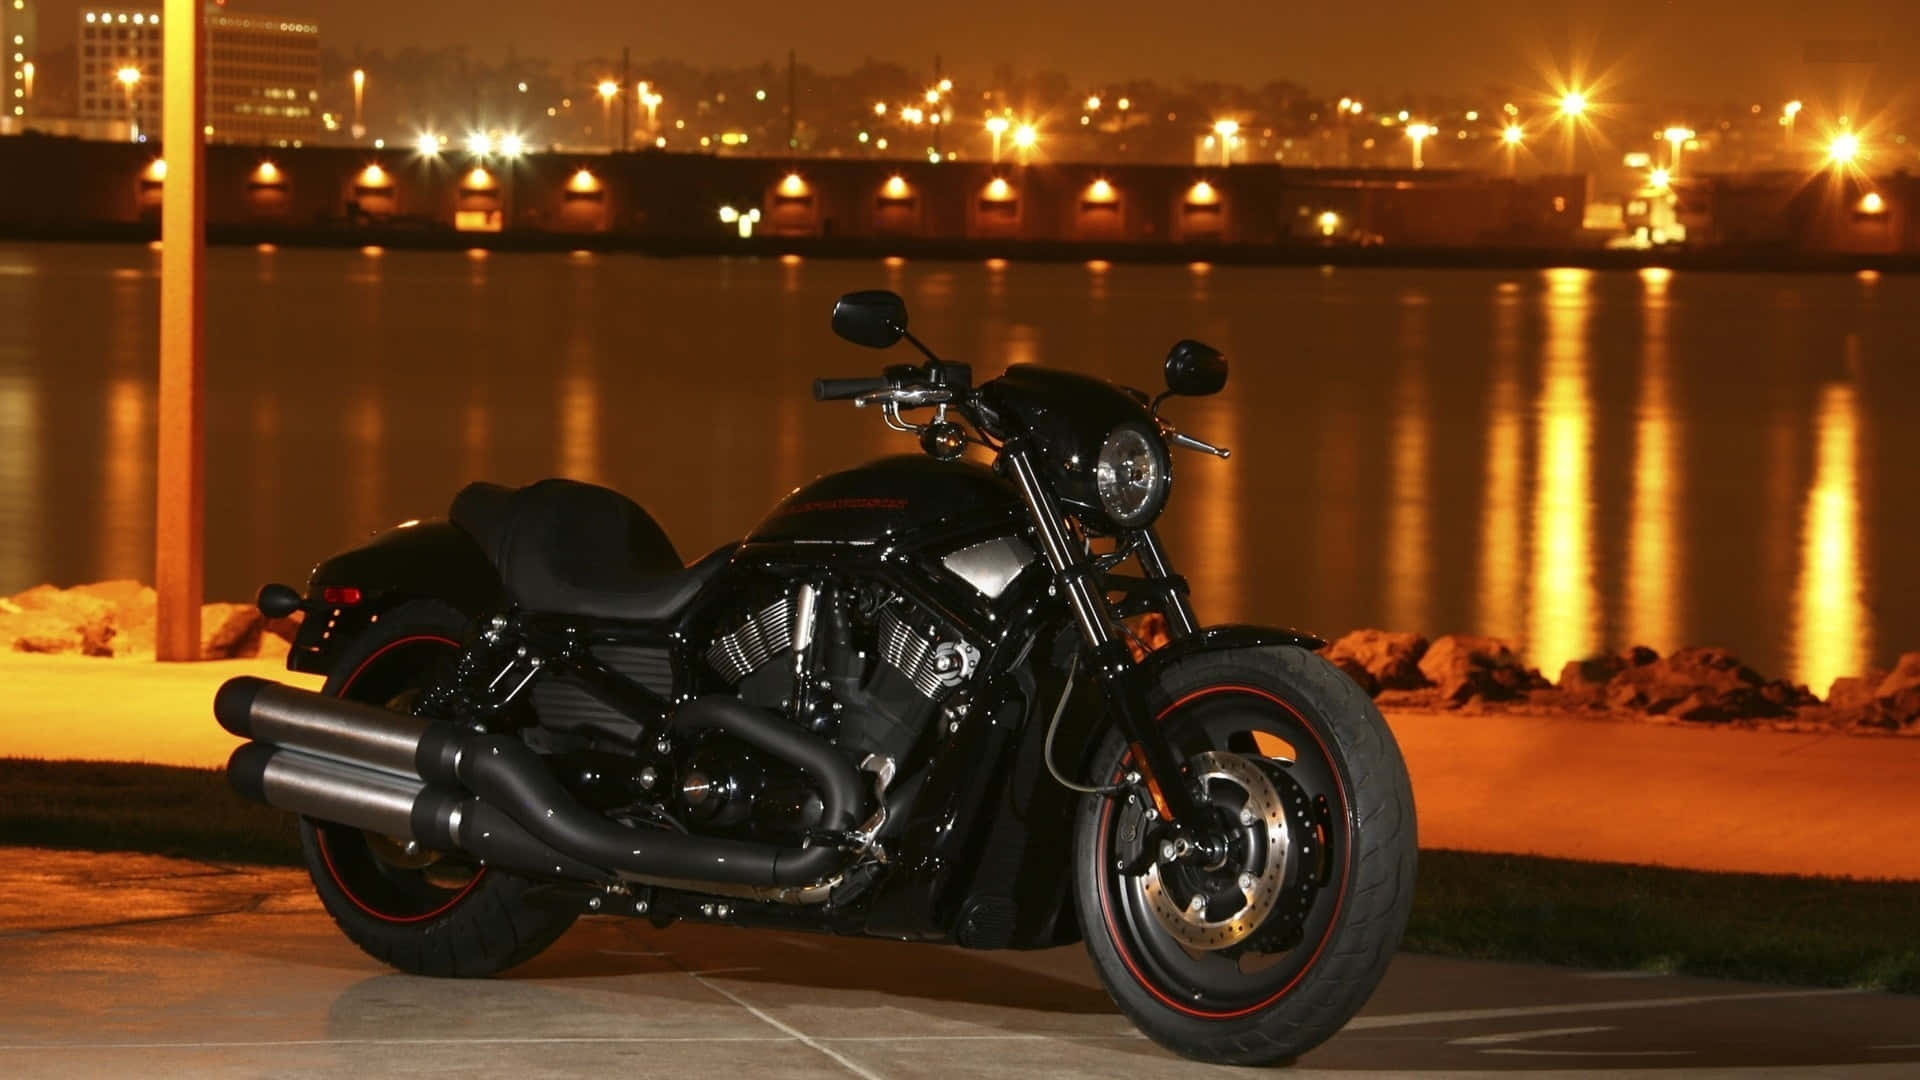 Harley Davidson Hd At Night Wallpaper